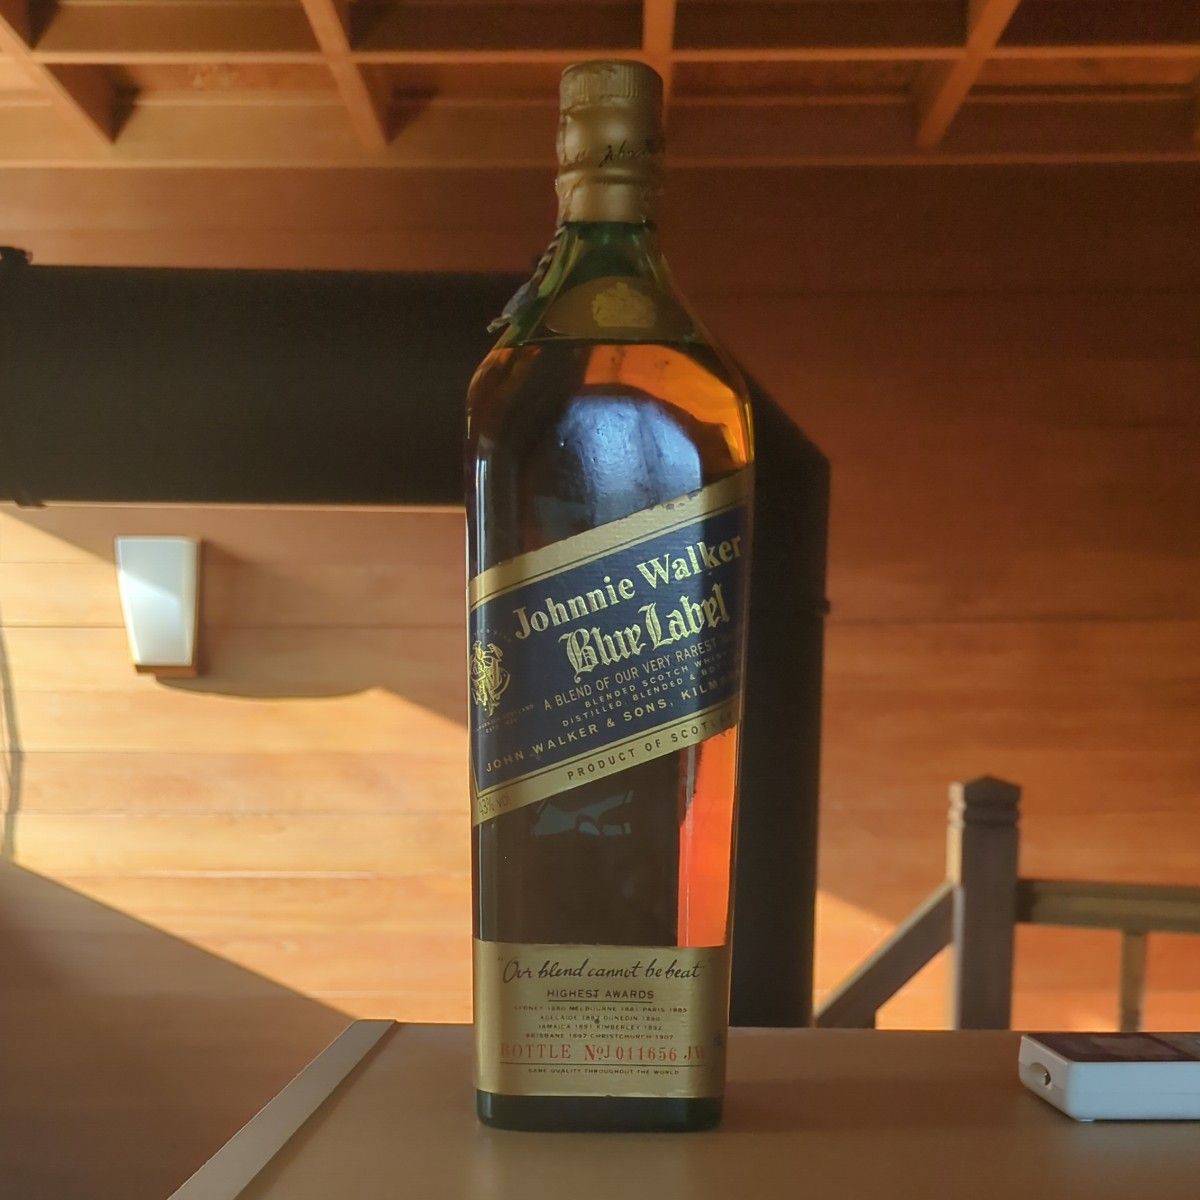 jahnnie walker blue label scotch whisky 古酒 スコッチウイスキー ジョニーウォーカー